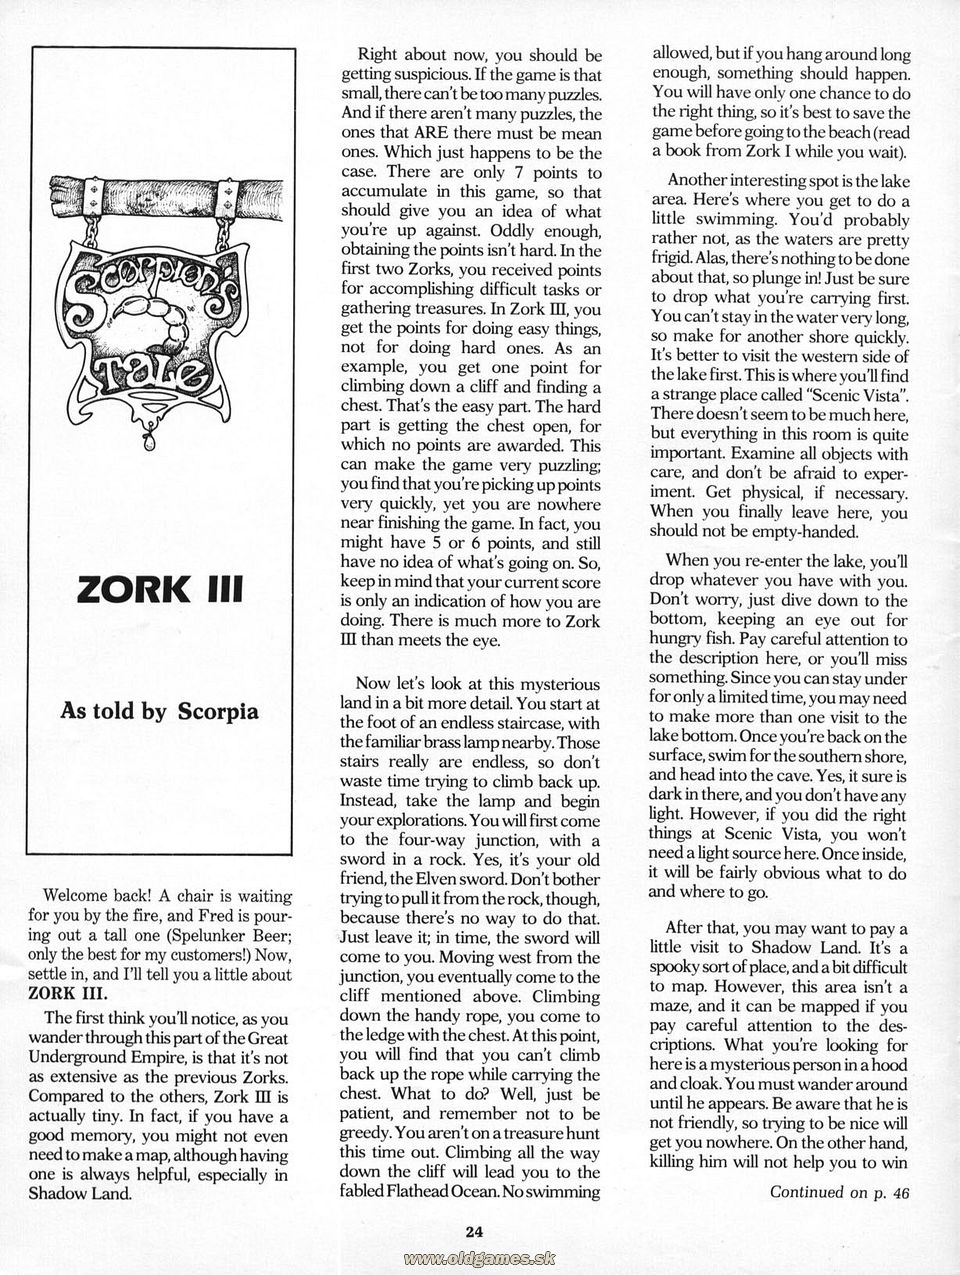 Scorpion's Tale: Zork III